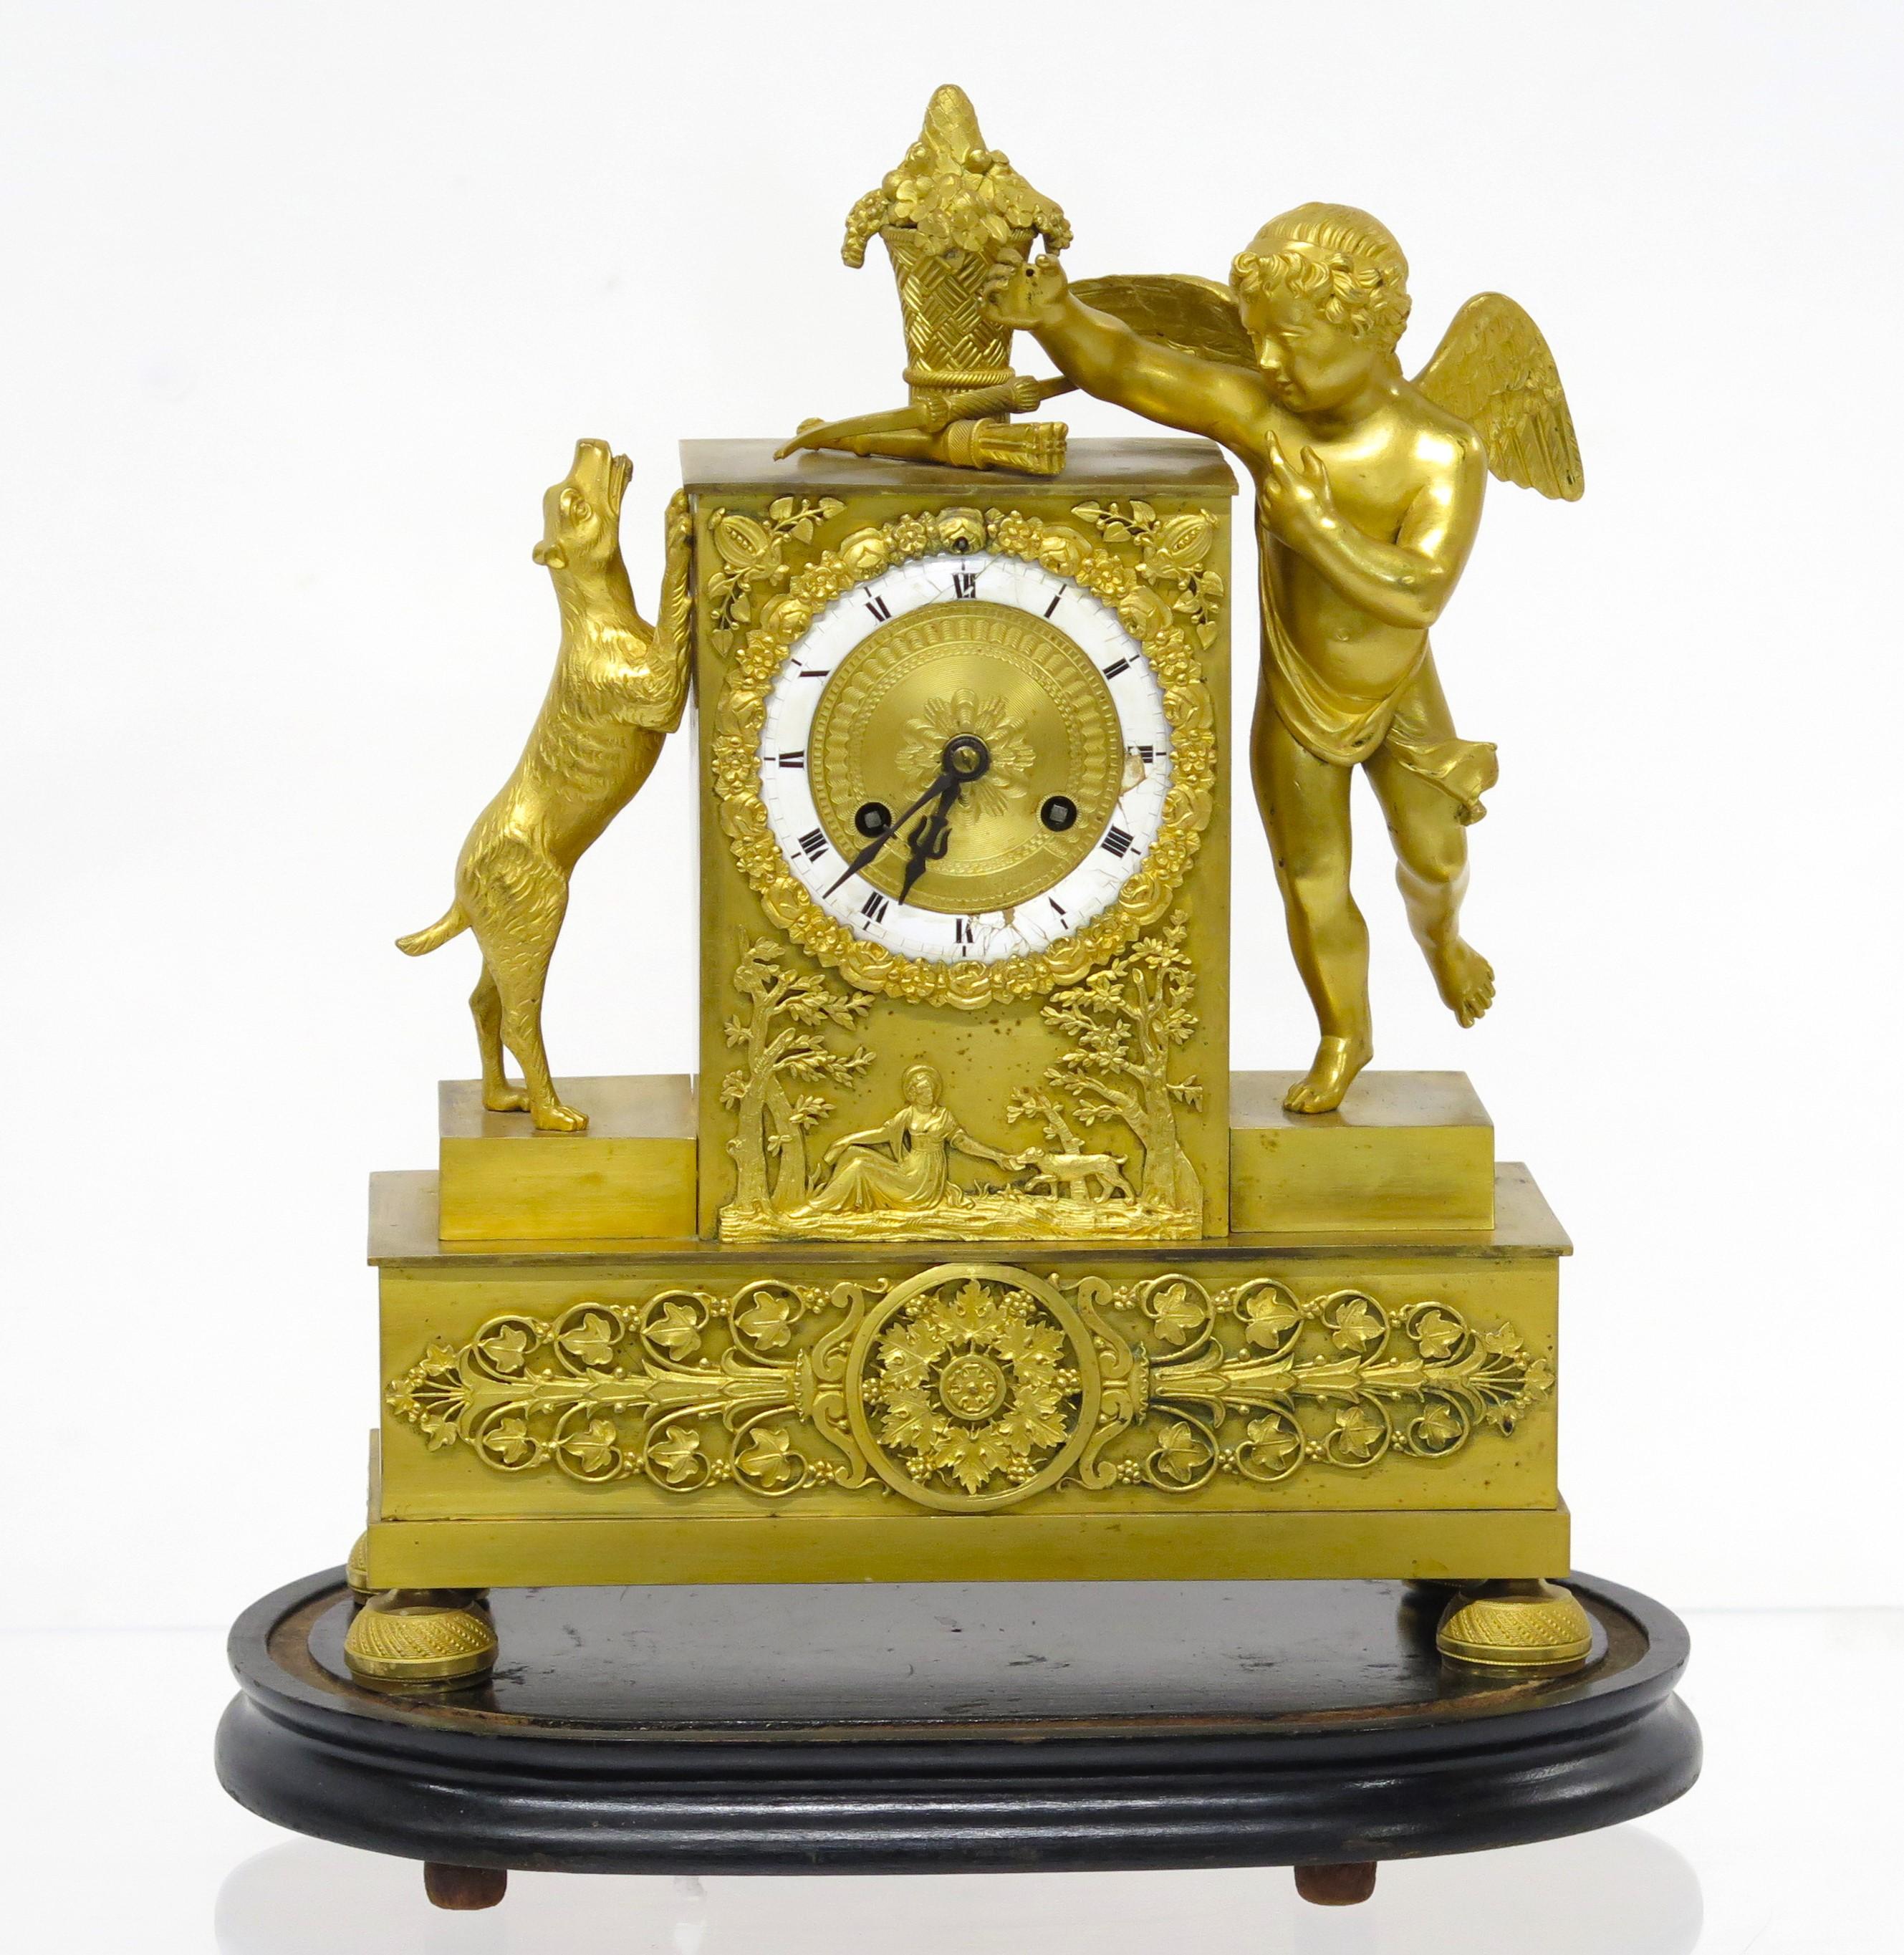 eine Charles X vergoldete Bronze-Manteluhr mit Amor und einem Hund auf den Hinterbeinen, der bellt / springt / oder bettelt, die Figuren flankieren die rechteckige Uhr, der Hund scheint zu versuchen, den Korb oben auf der Uhr zu bekommen, Amor fehlt